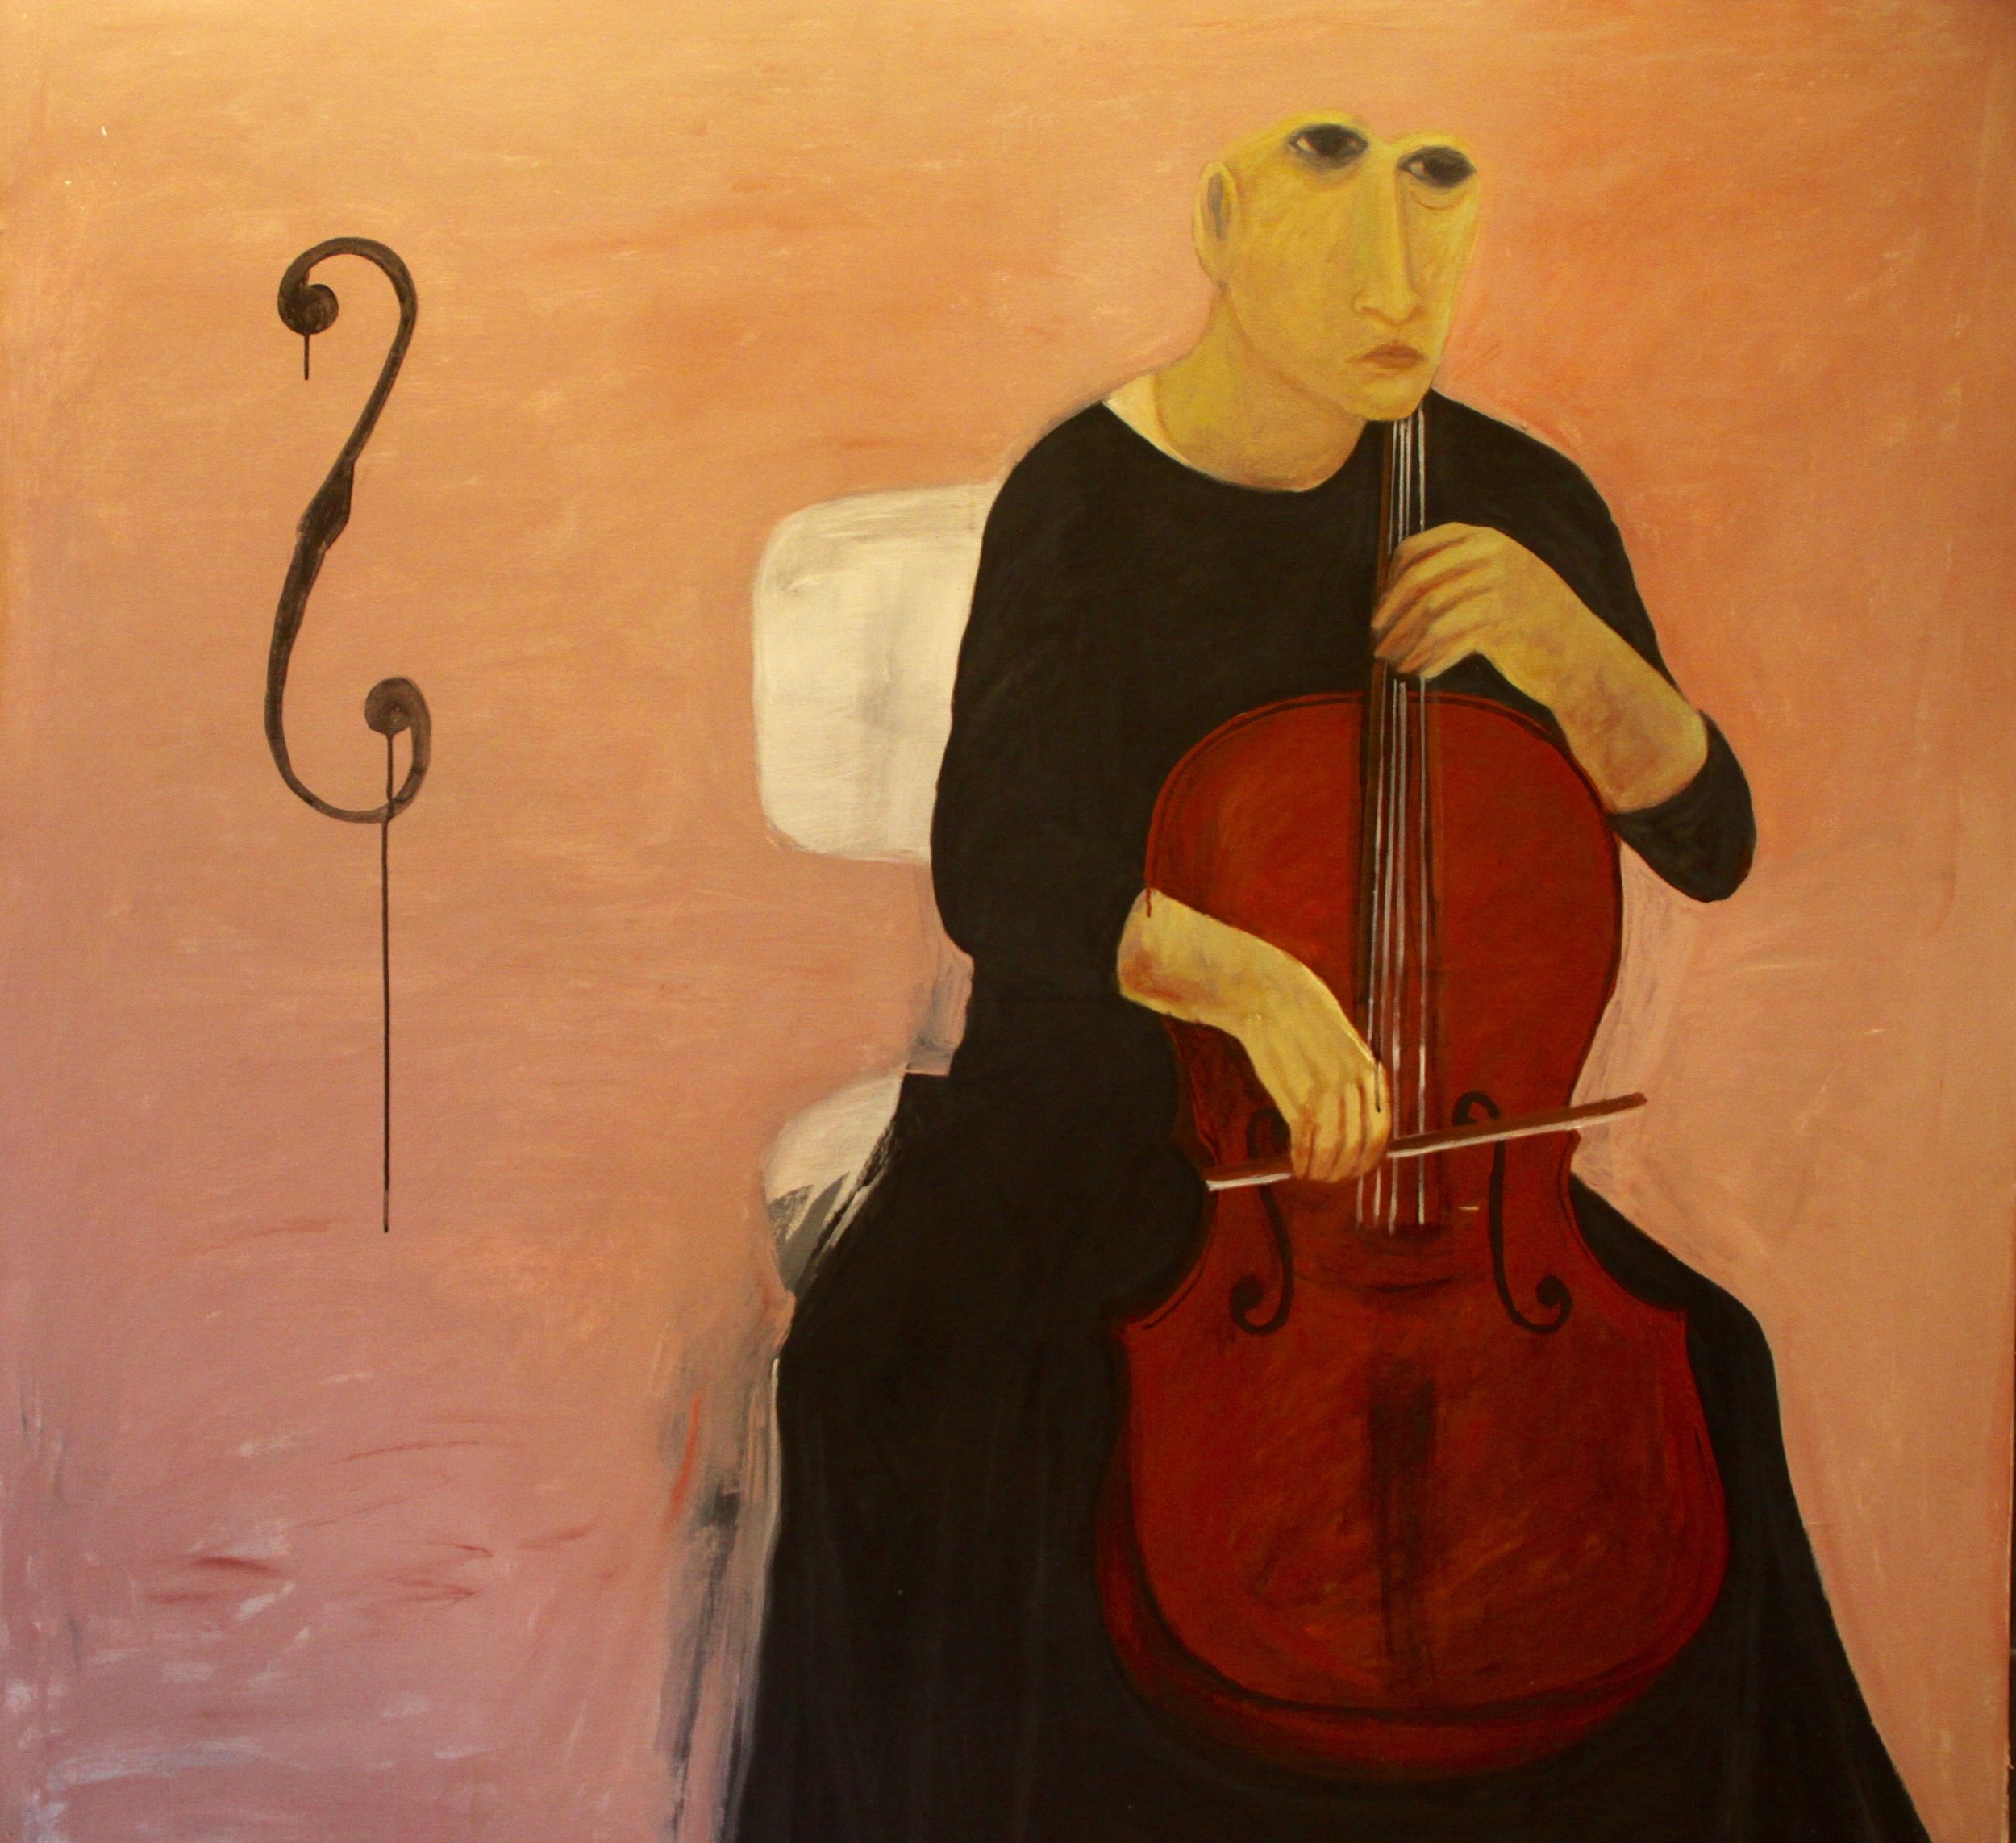  The Cello Player, 2007, Acrylic on canvas, 173 x 173 cm  